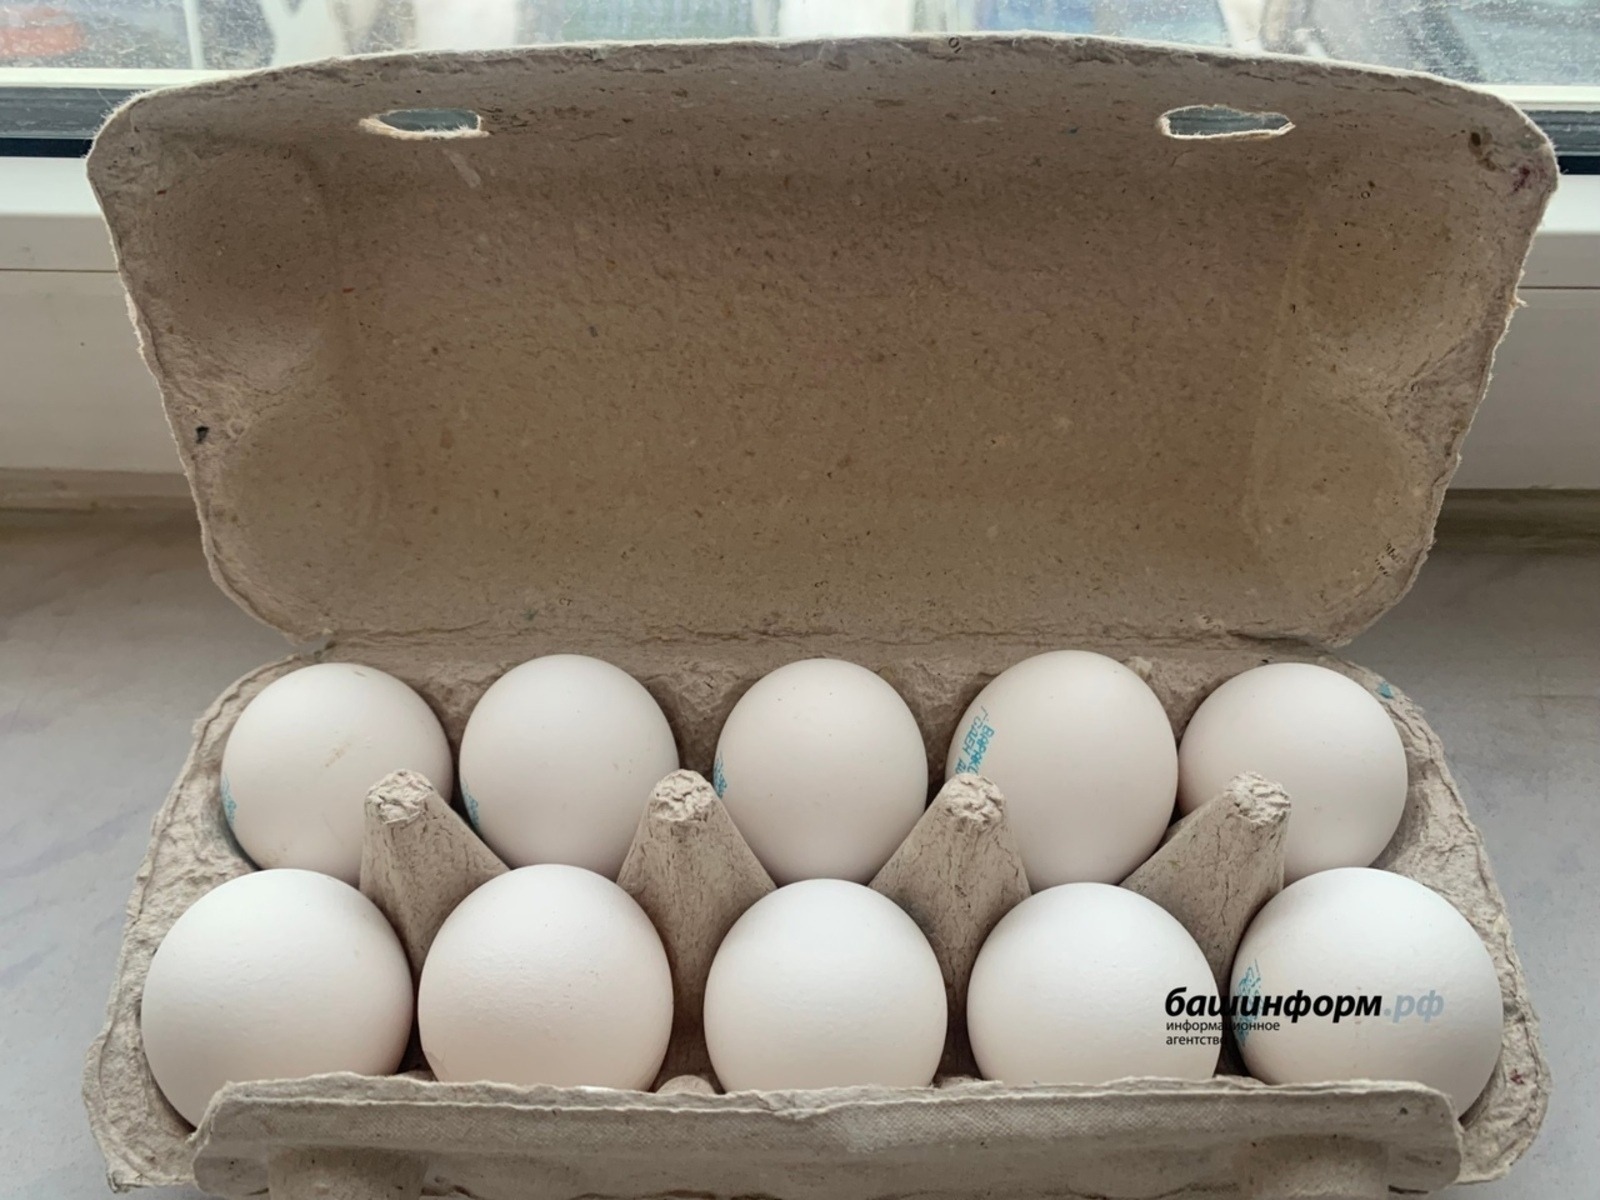 Федеральная антимонопольная служба проверяет крупнейшие торговые сети из-за роста цен на яйца